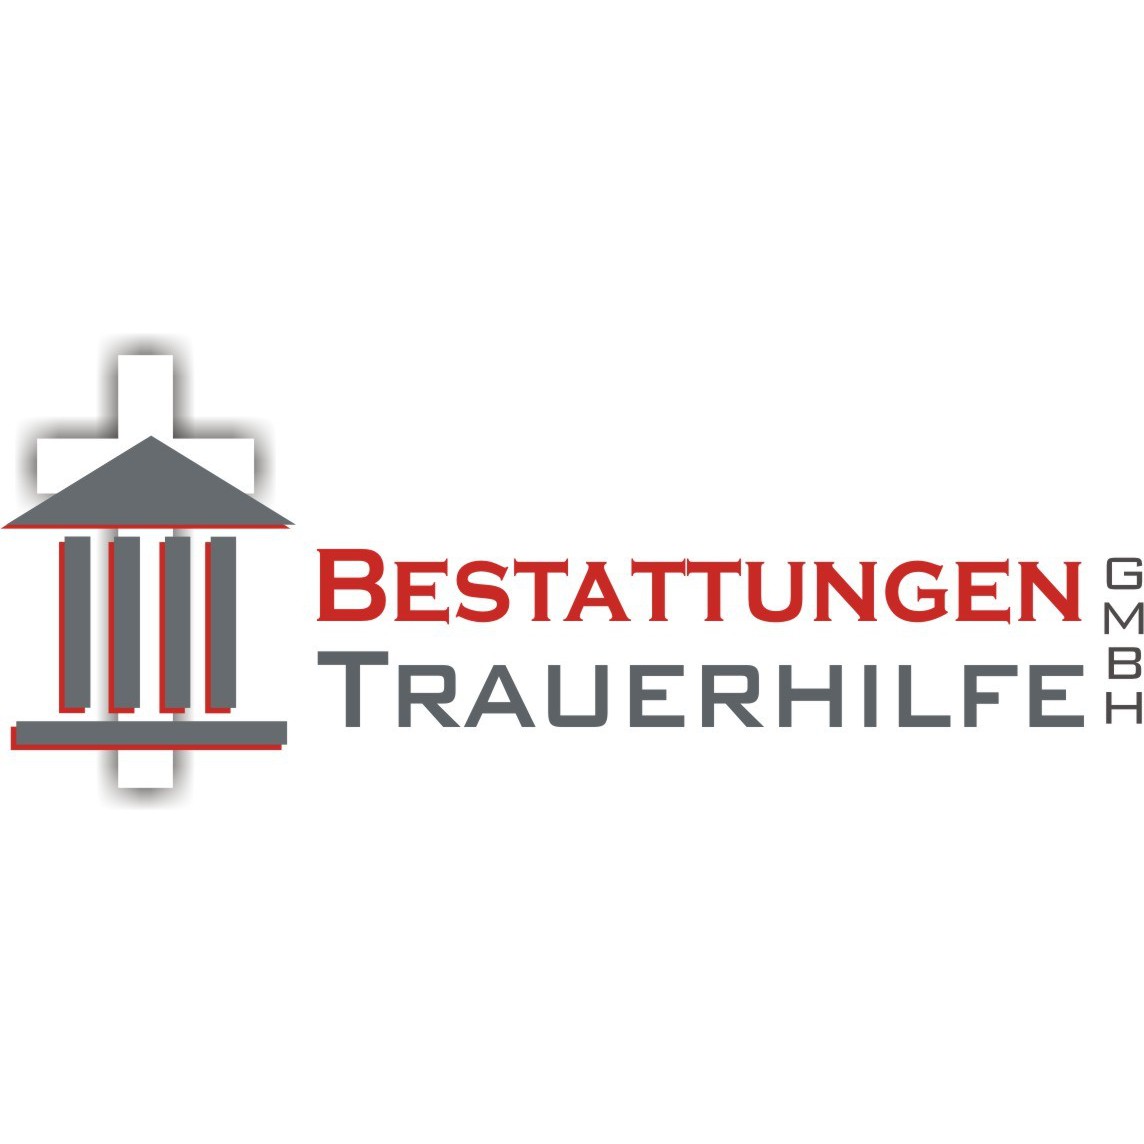 Logo Bestattungen Trauerhilfe Michael Kraus